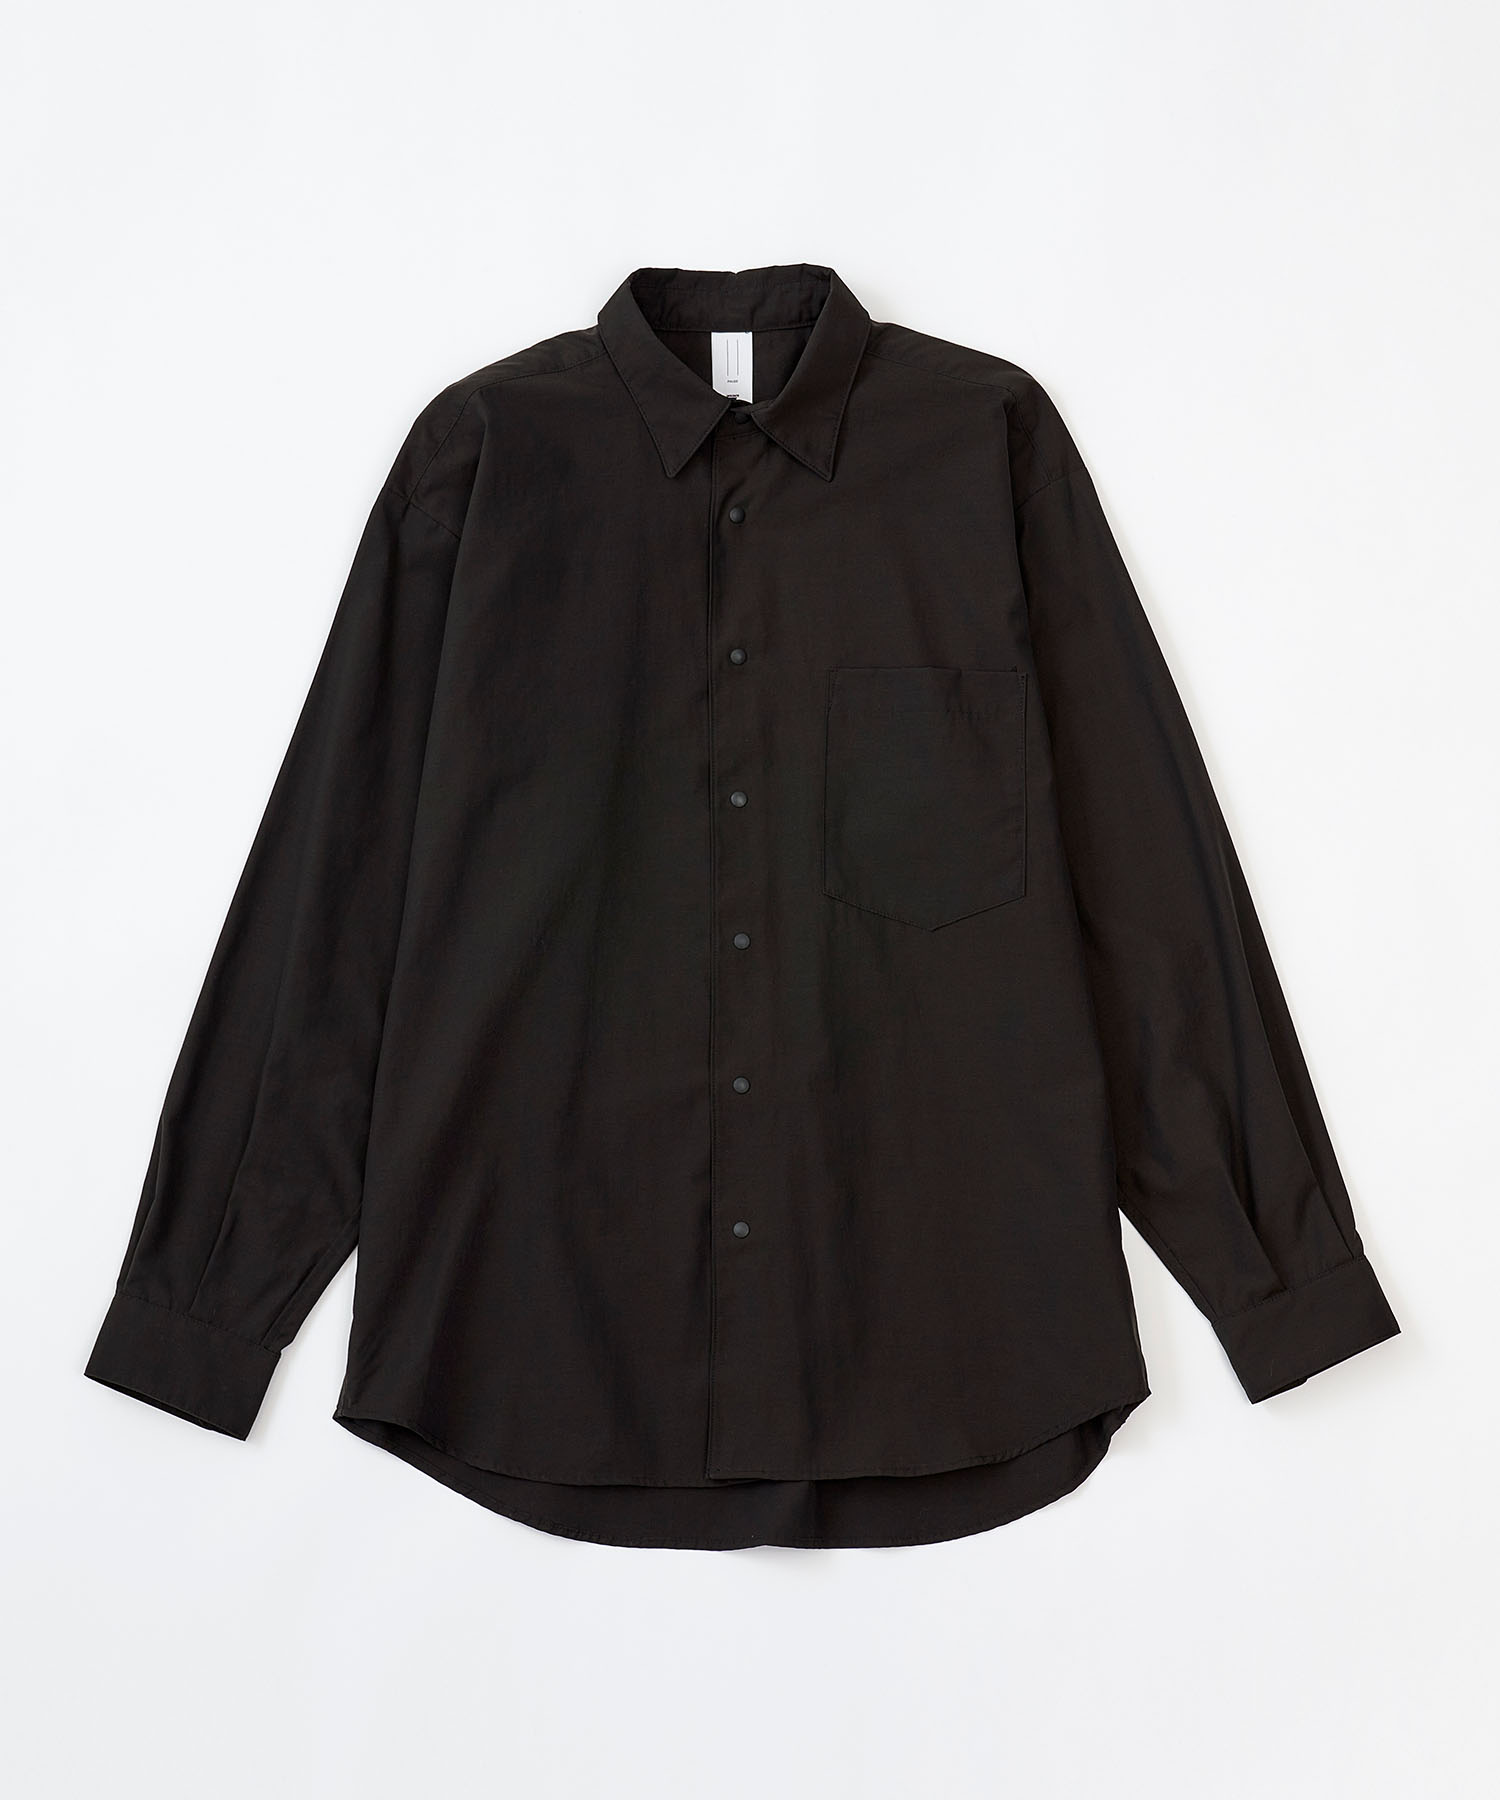 フィラシスニットシャツ Firacis Knit Shirt Pause アウトレット デサント公式通販 デサントストア Descente Store